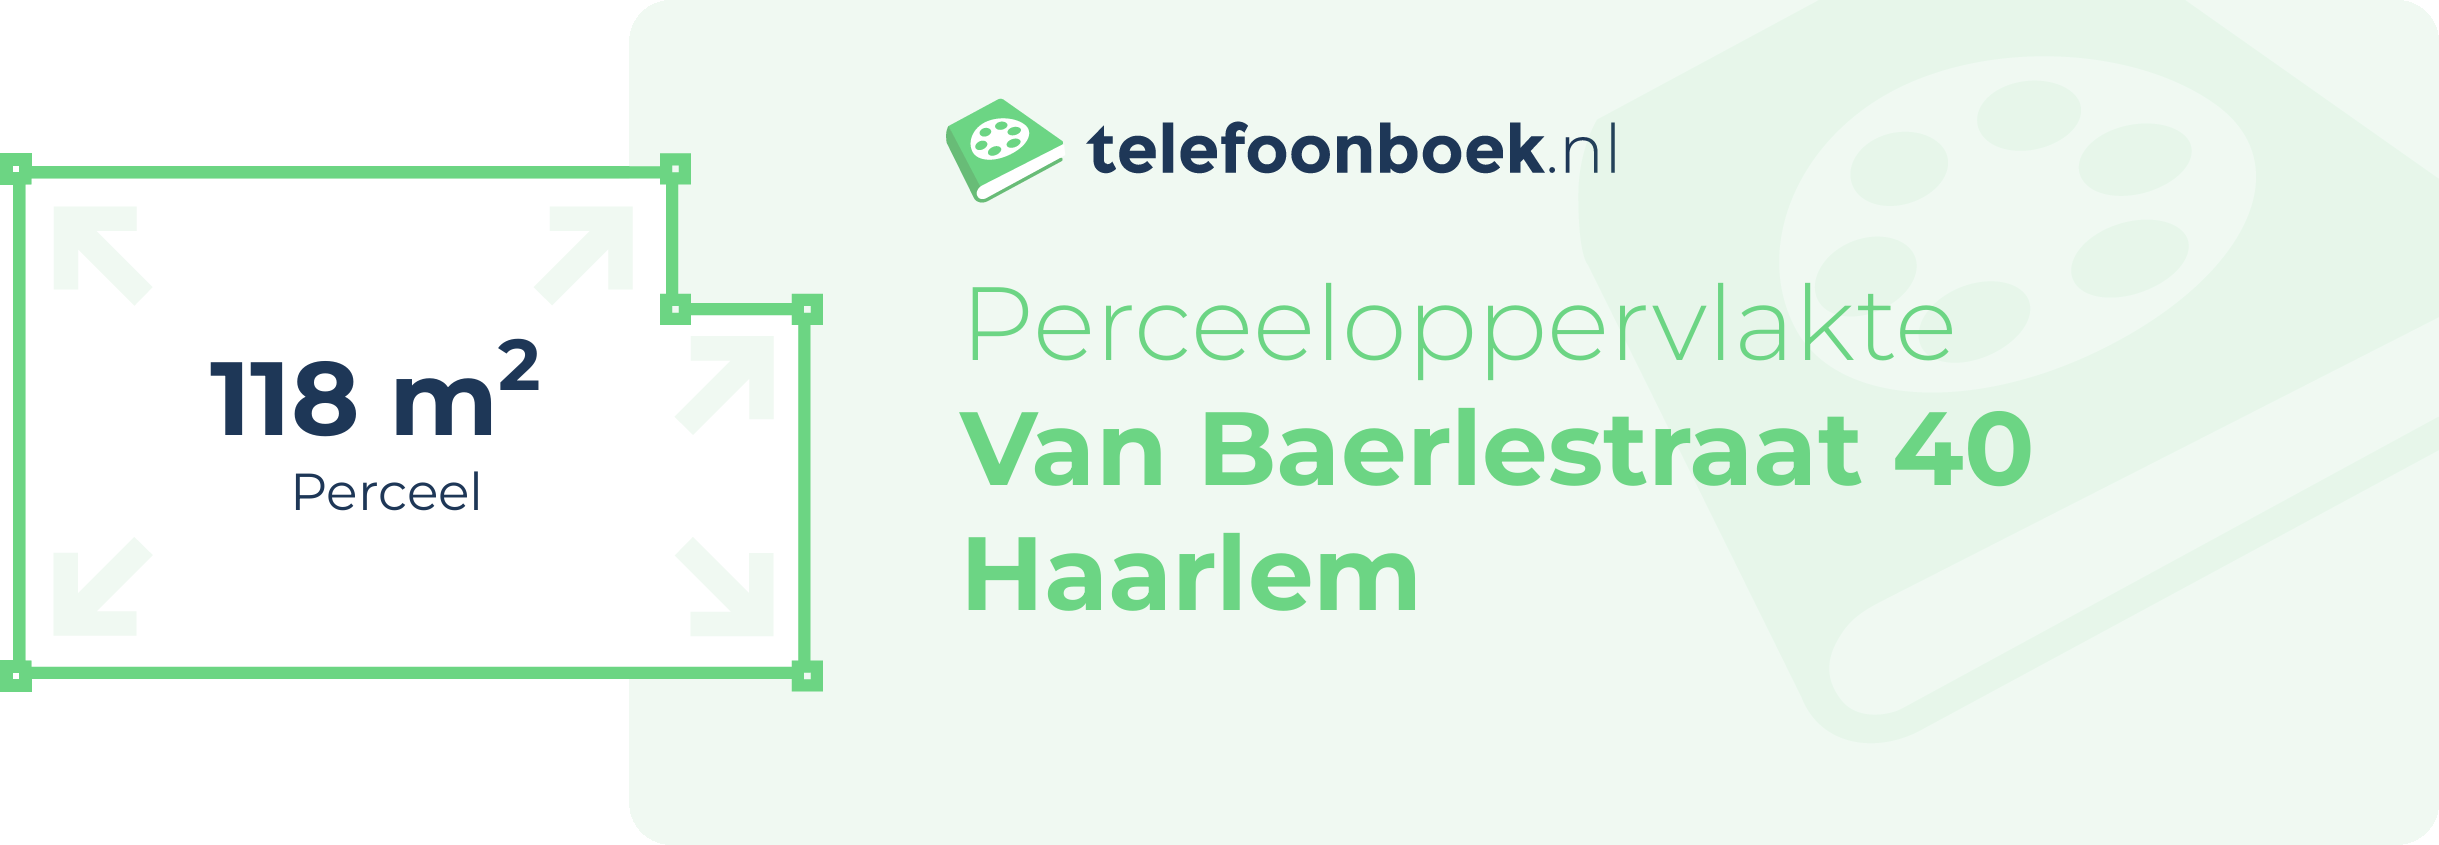 Perceeloppervlakte Van Baerlestraat 40 Haarlem